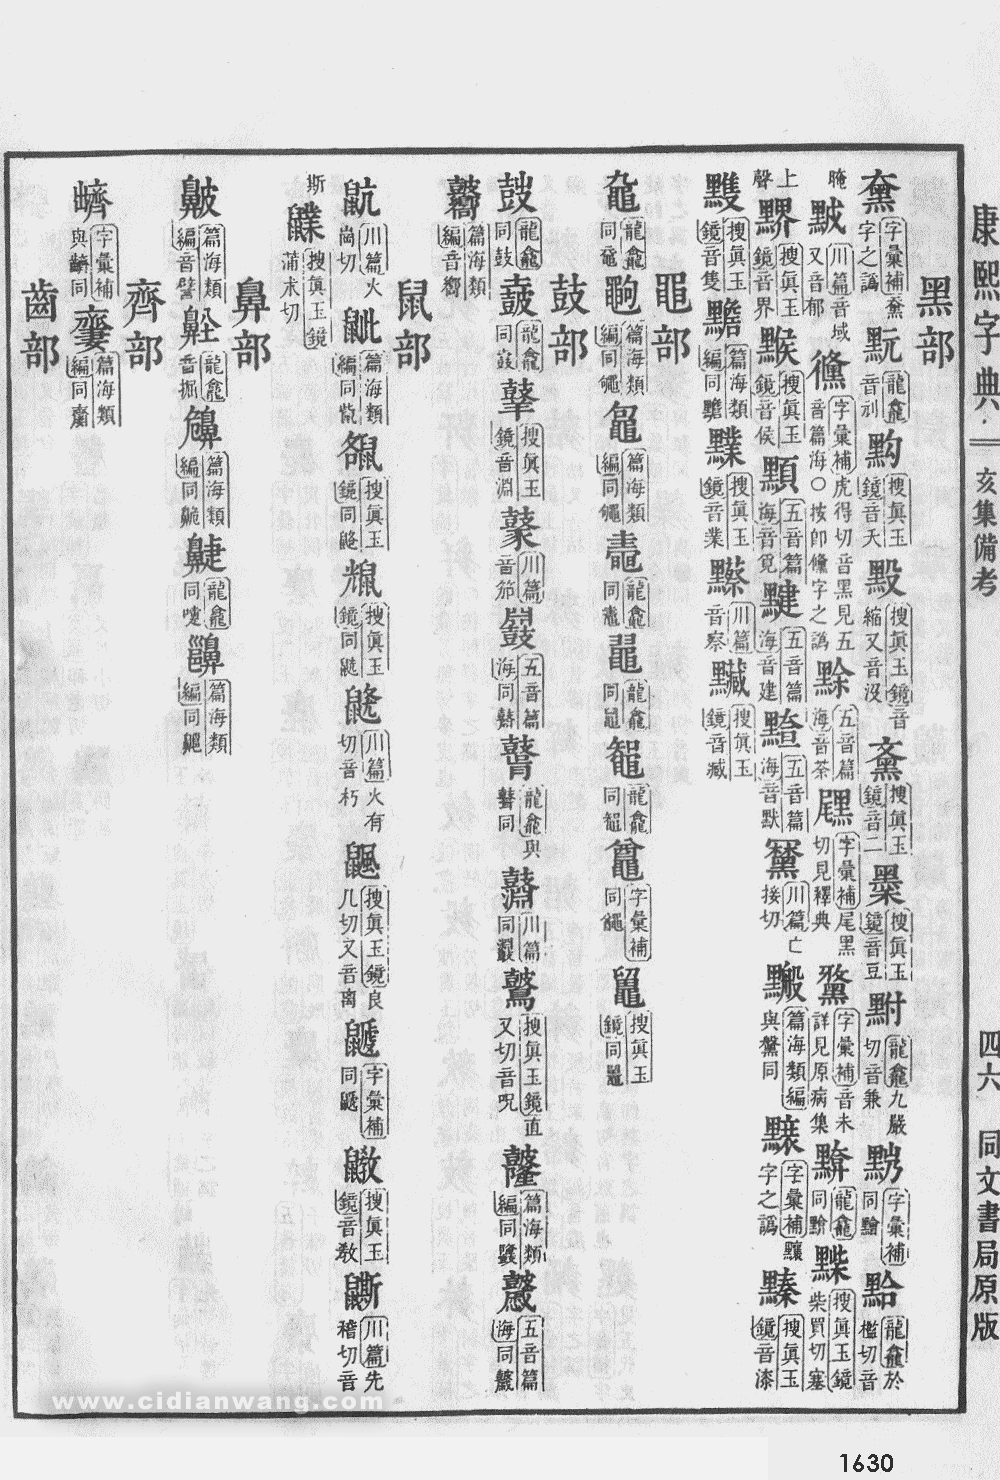 康熙字典掃描版第1630頁